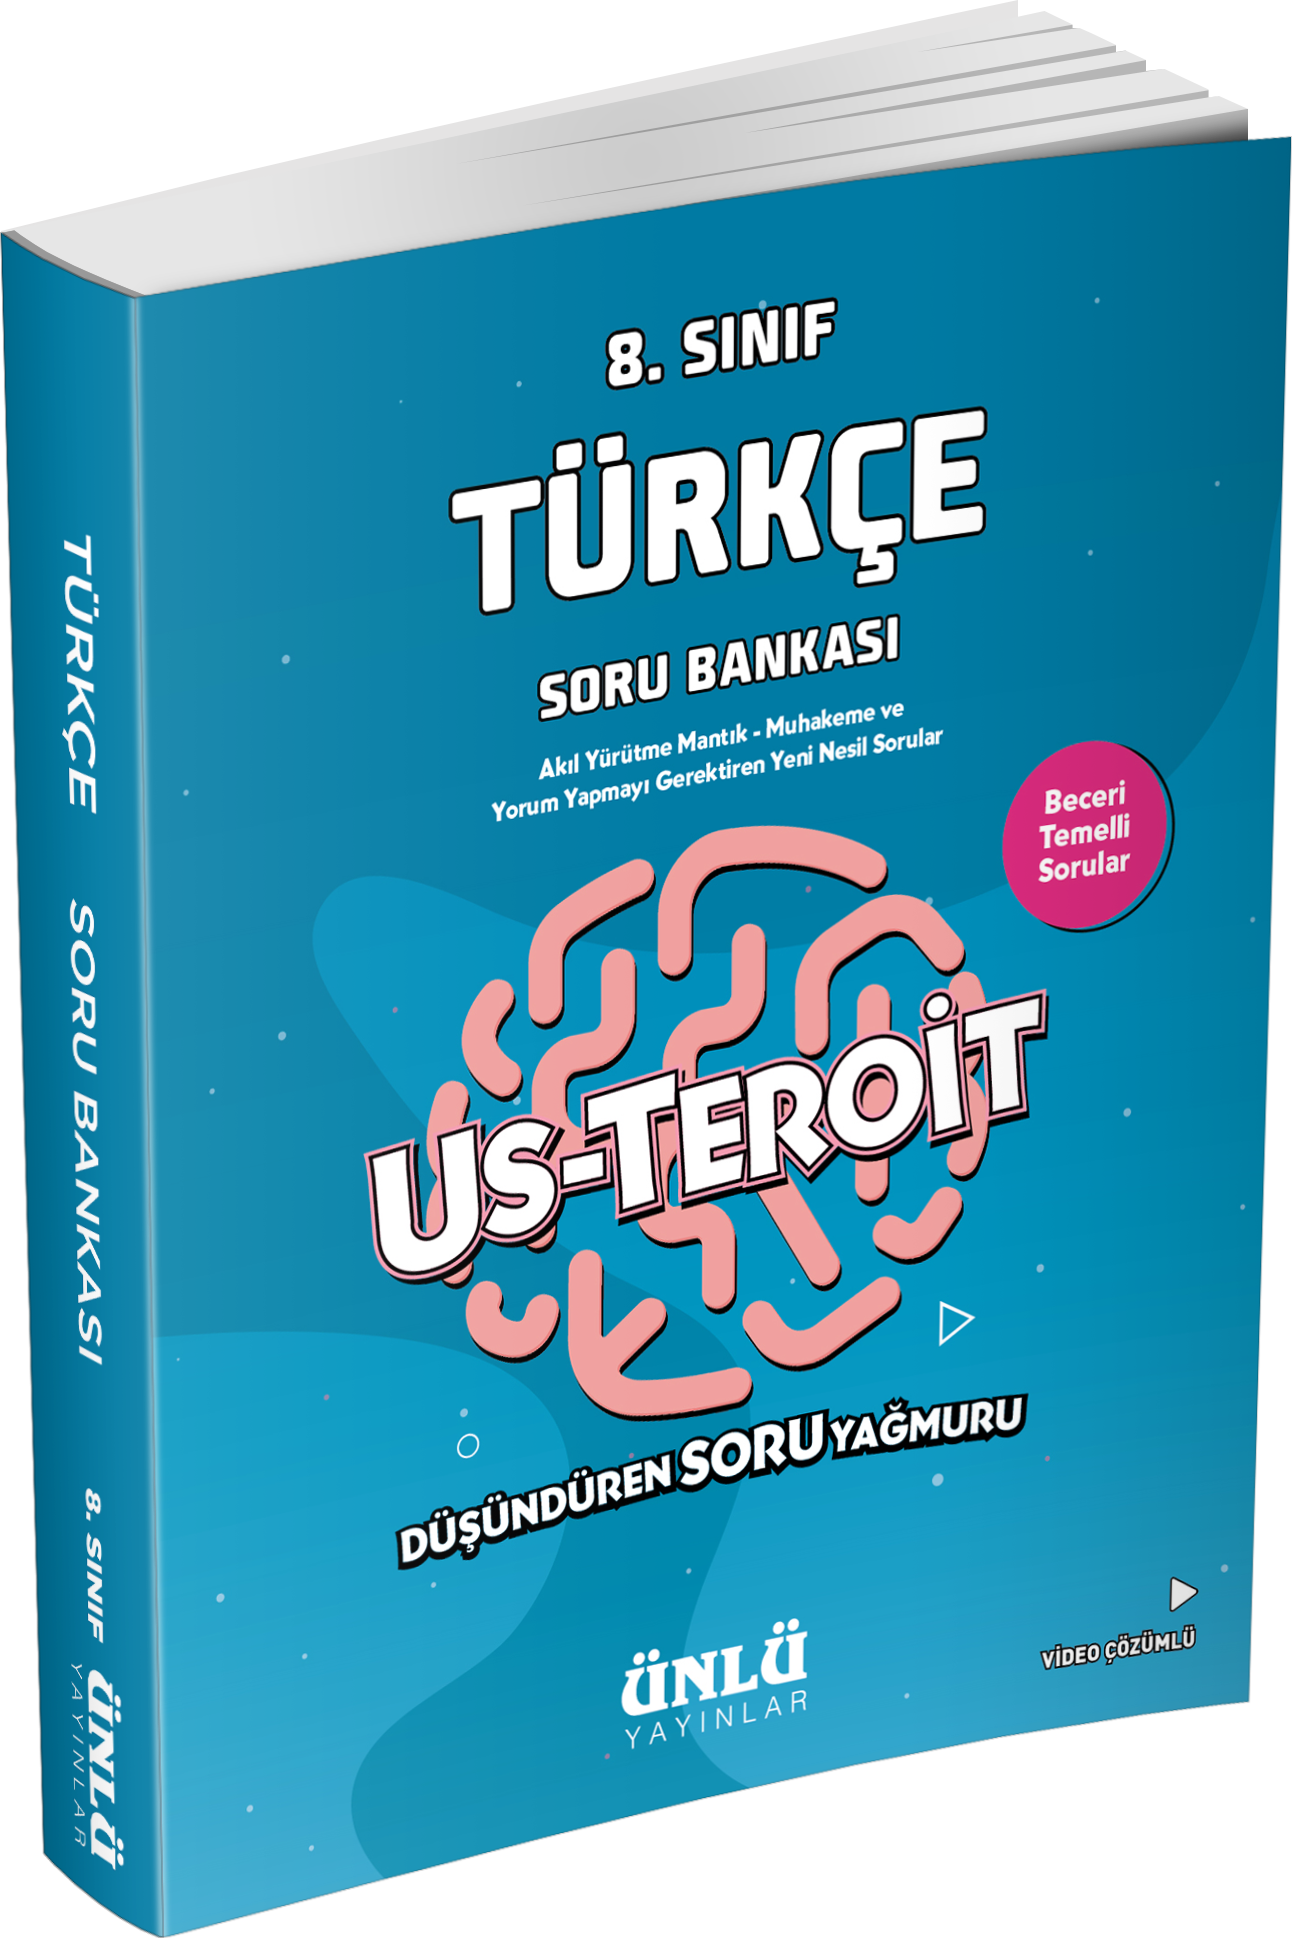 8. Sınıf Us-Teroit Türkçe Soru Bankası